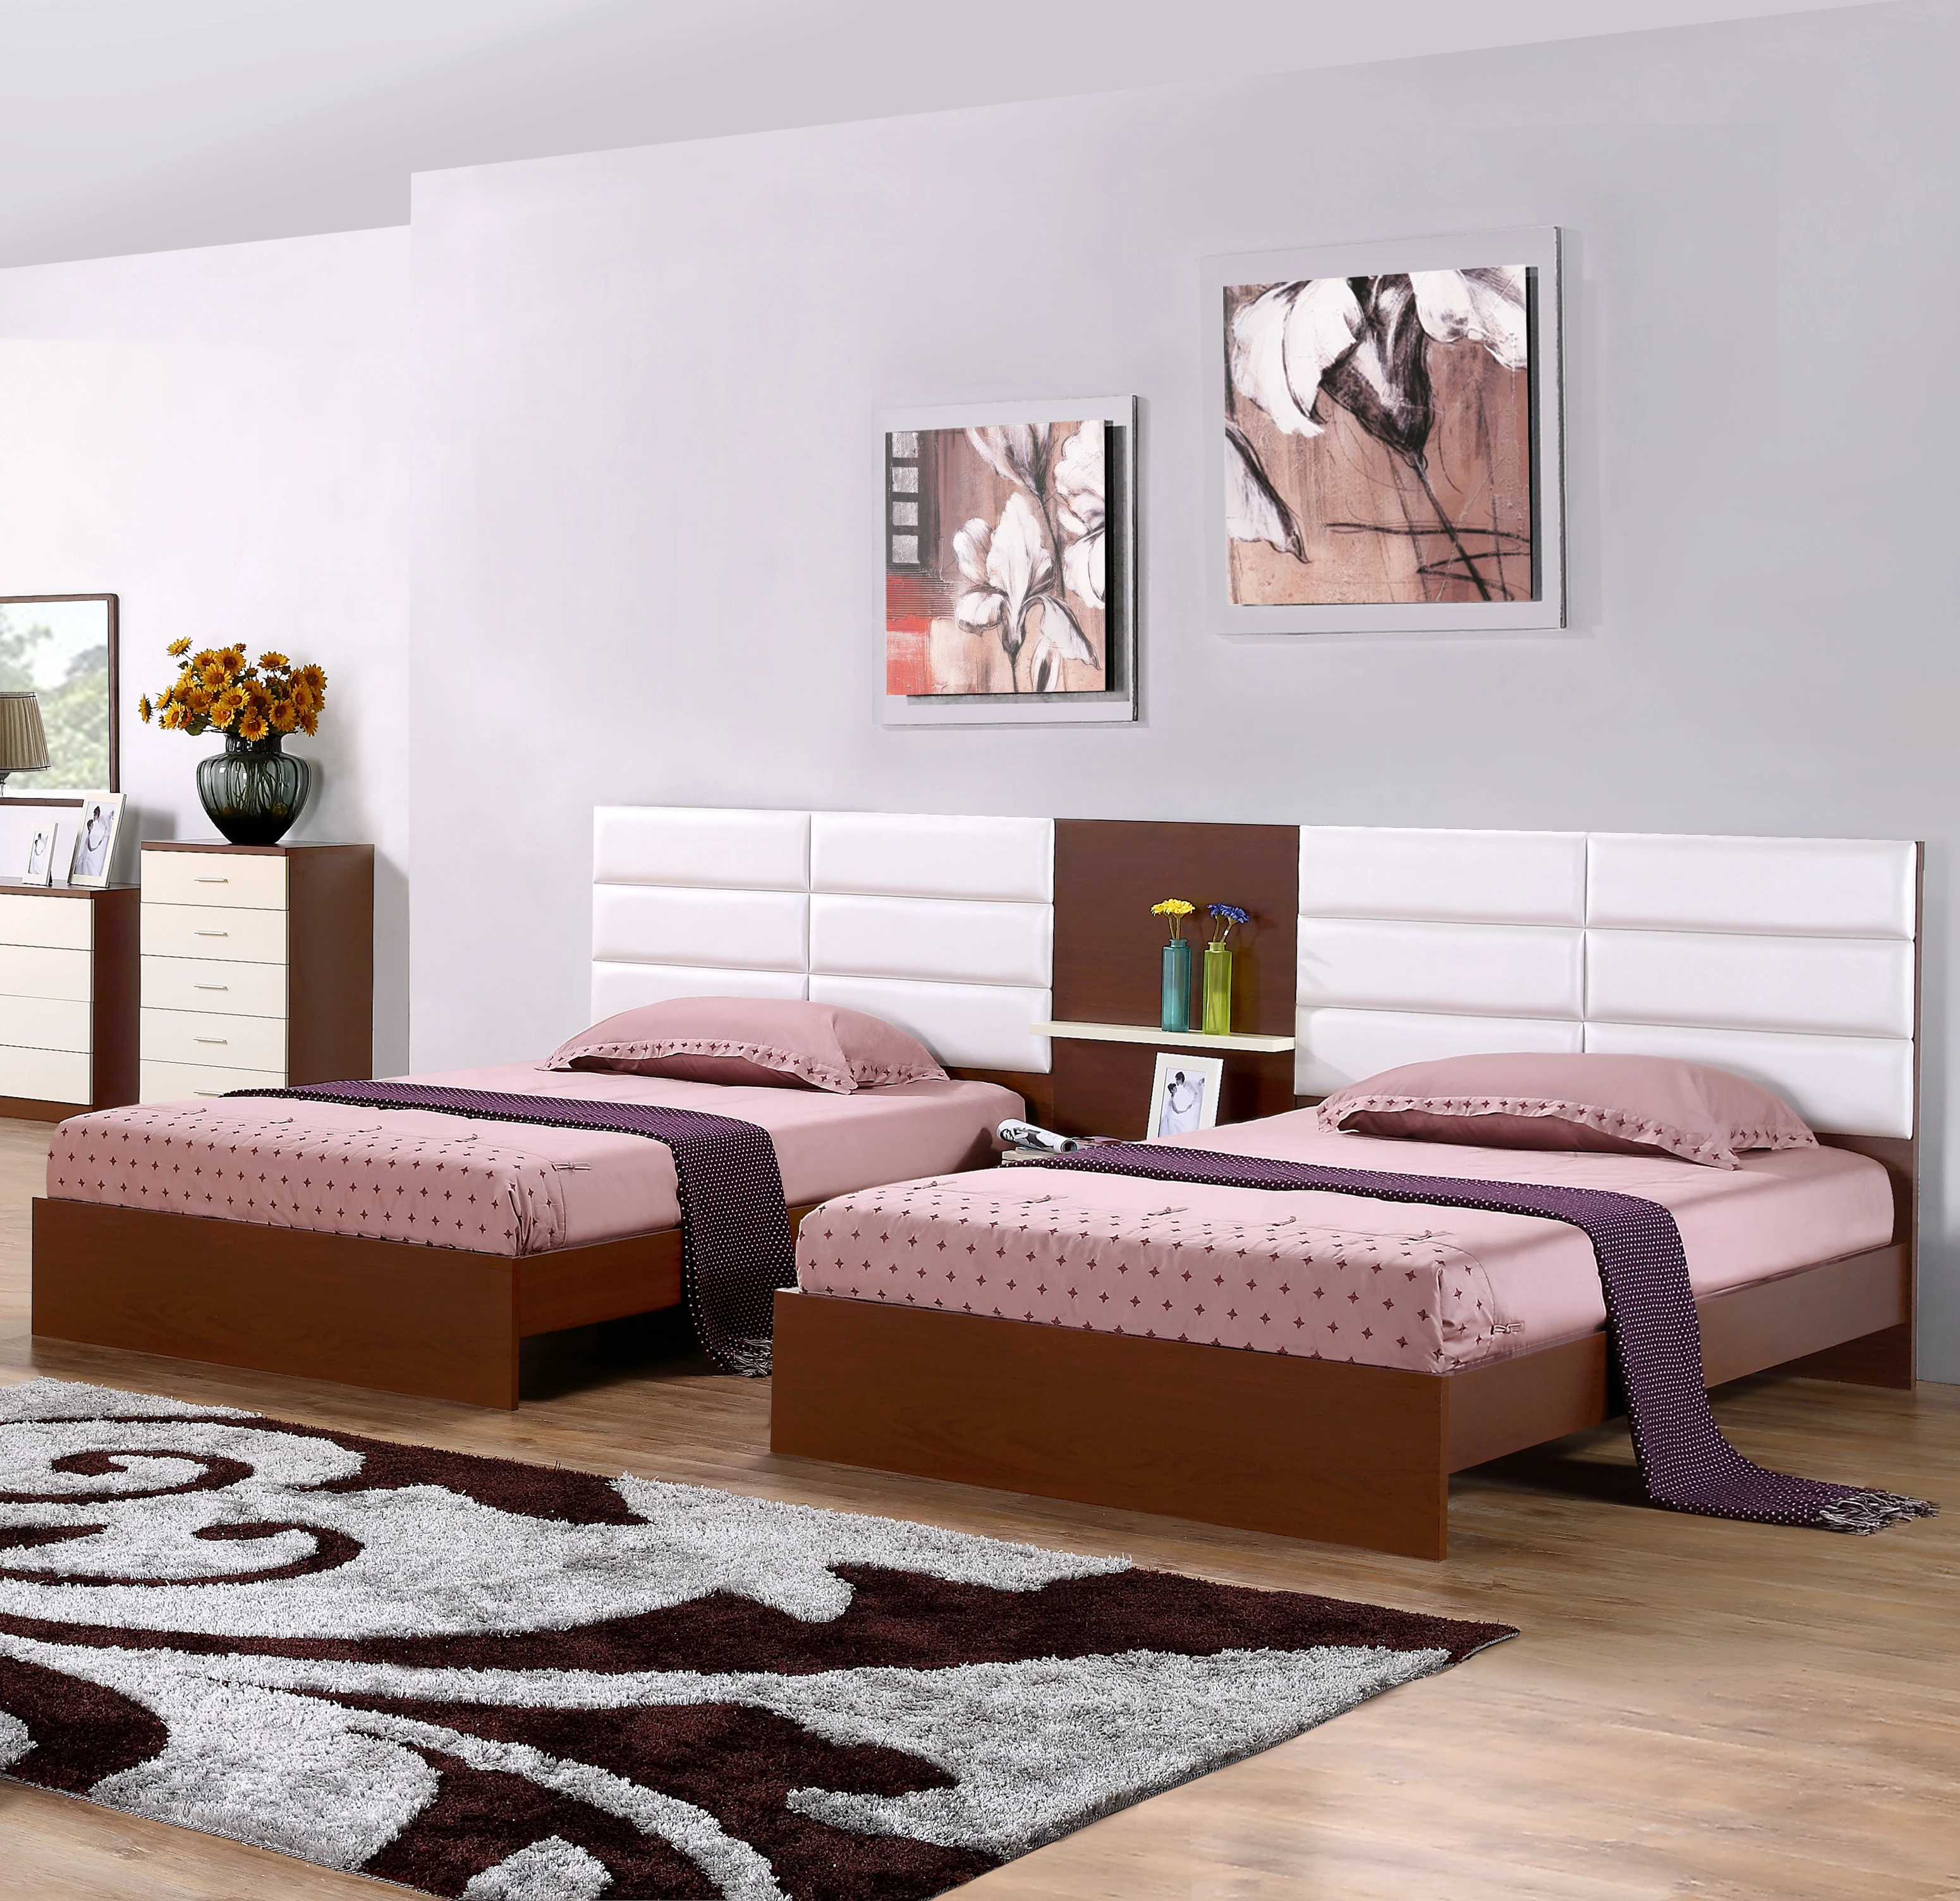 تصاميم سرير مفرد خشبي حديث مجموعة أثاث غرف النوم شقة رخيصة Buy شقة مجموعة أثاث غرف النوم سرير مفرد خشبي تصاميم سرير مفرد Product On Alibaba Com